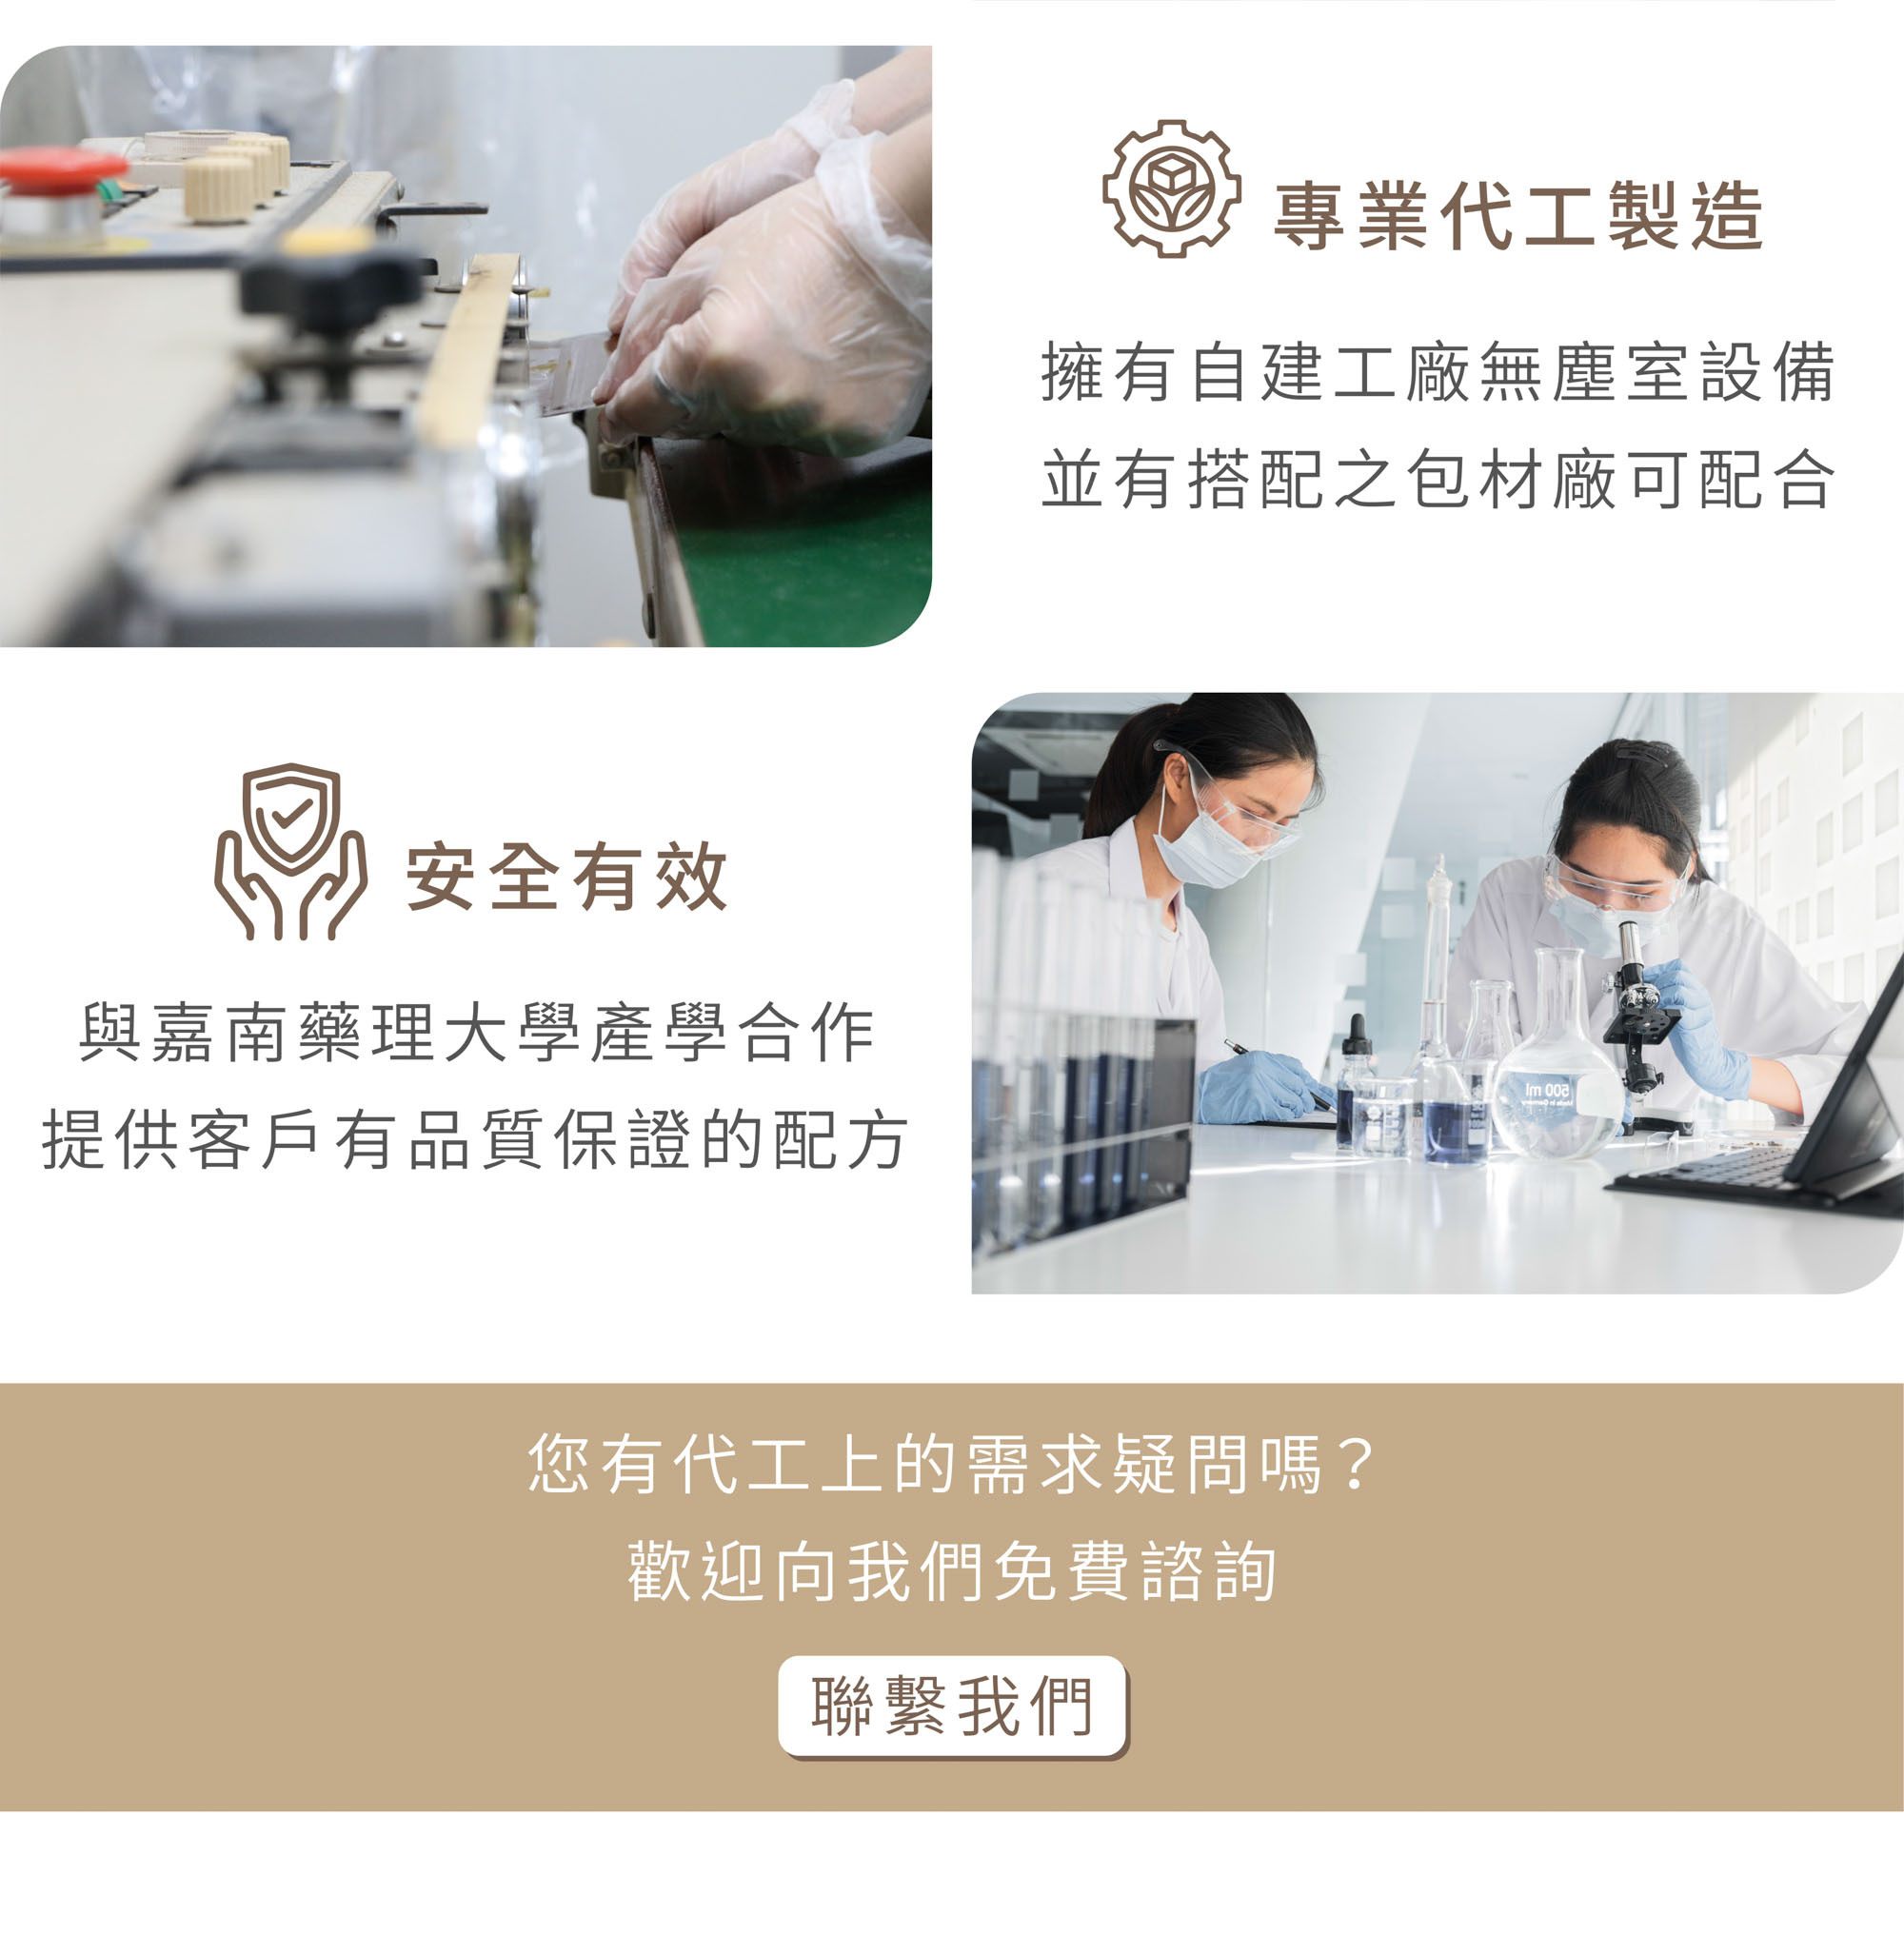 新譯漢方提供食品茶包代工服務